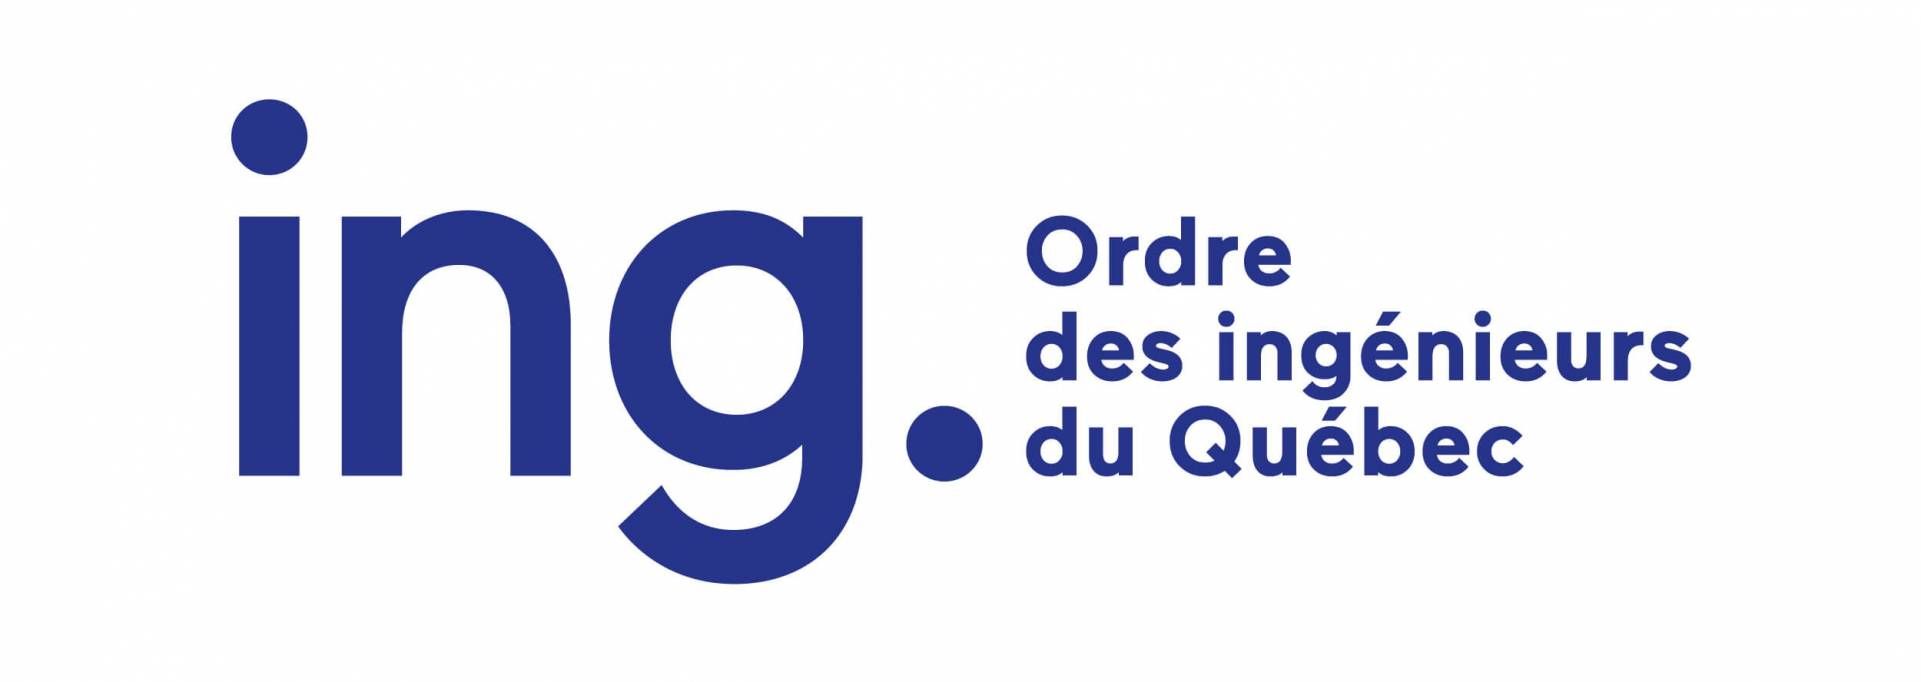 Ordre des ingenieurs du Quebec Logo